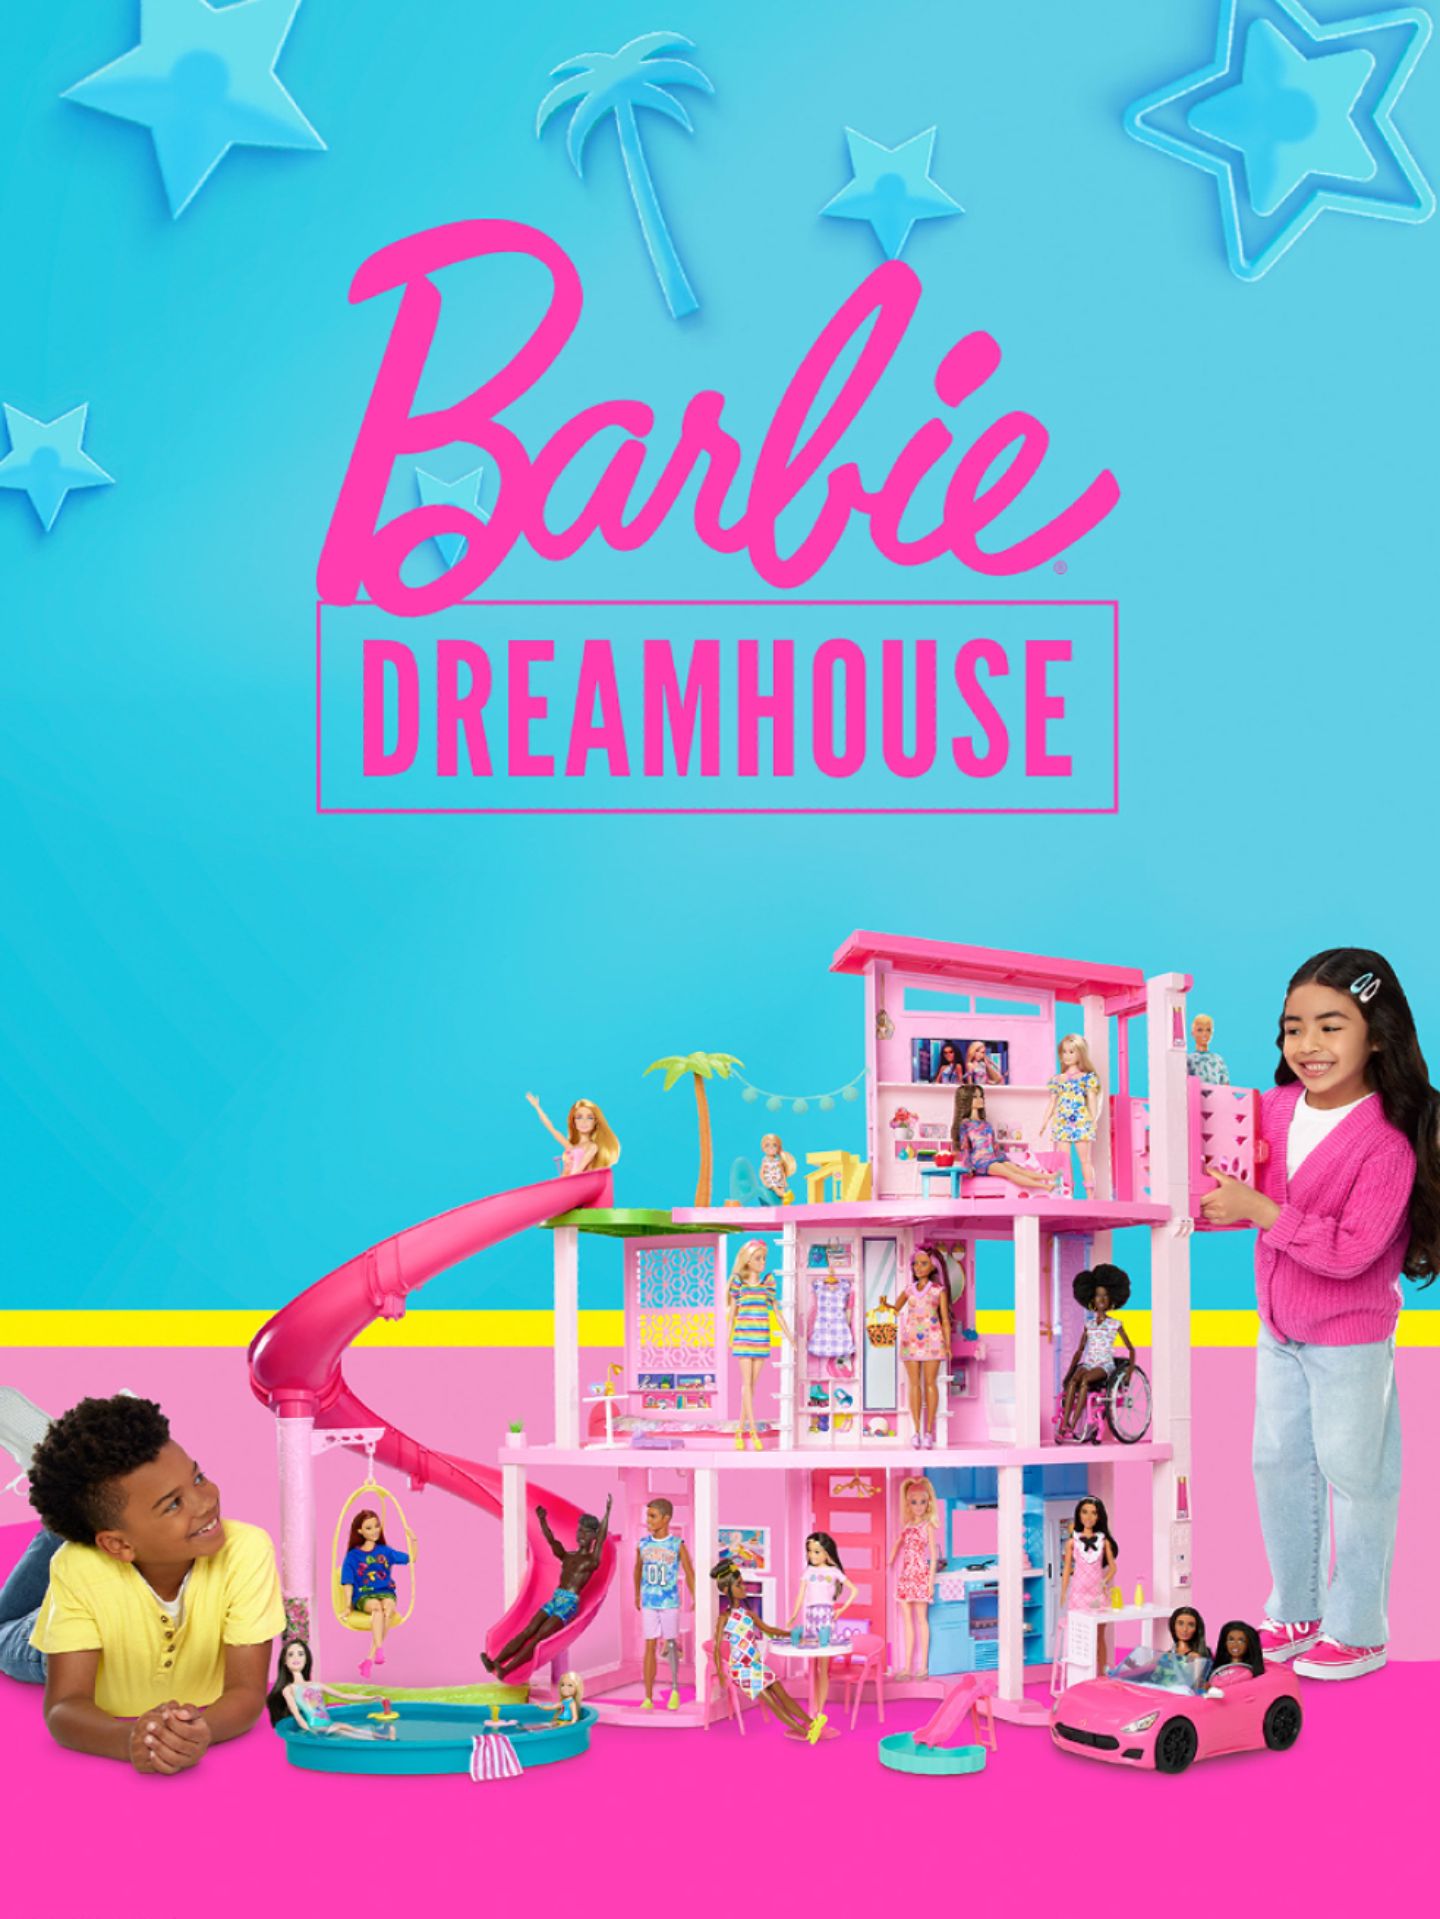 Twee_kinderen_spelend_met_een_Barbie_dreamhouse.jpg